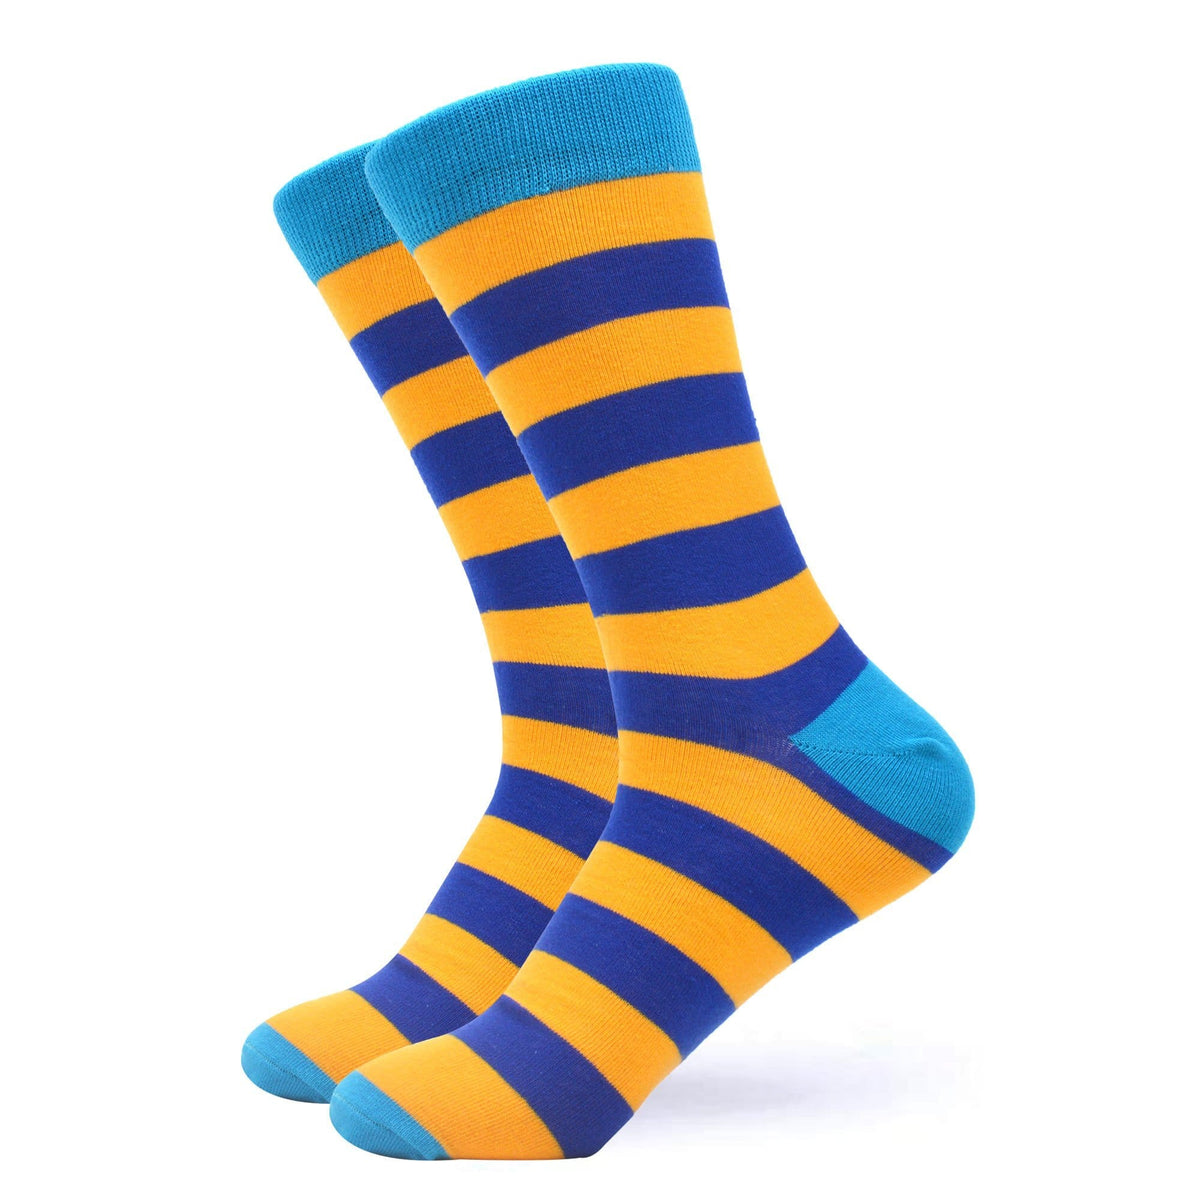 Sweet Yellow & Blue Striped Socks – West Socks